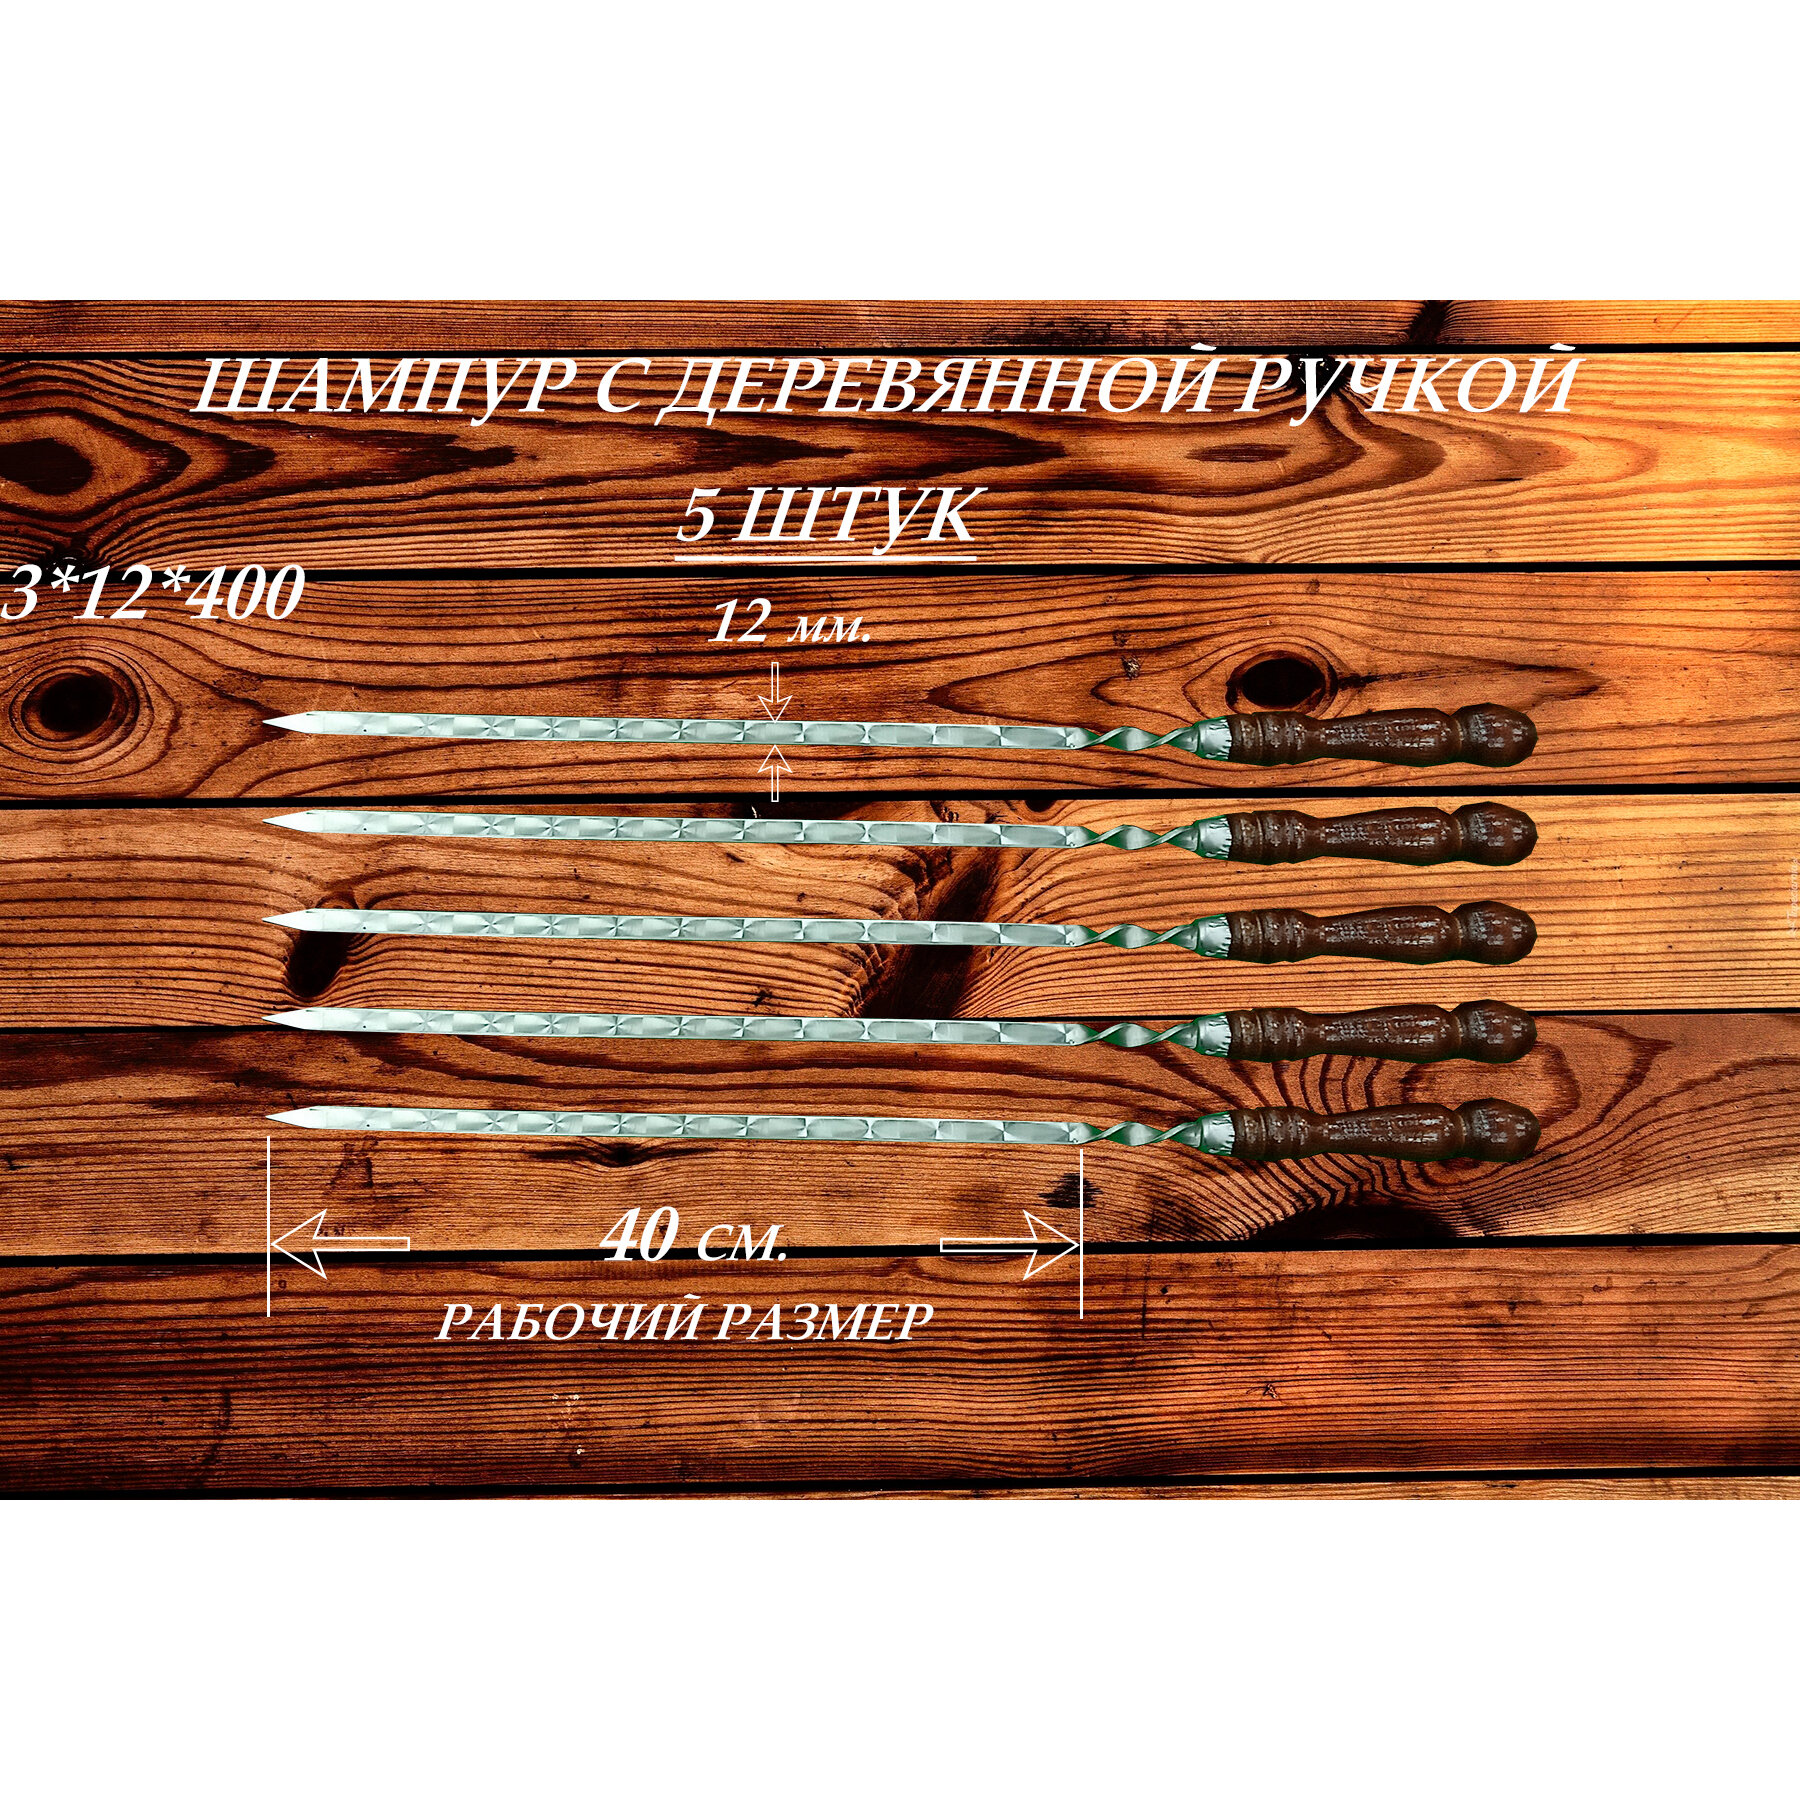 Набор шампуров из нержавеющей стали (5 шт.) с деревянной ручкой "РЗ" 3х12х400 (630) мм